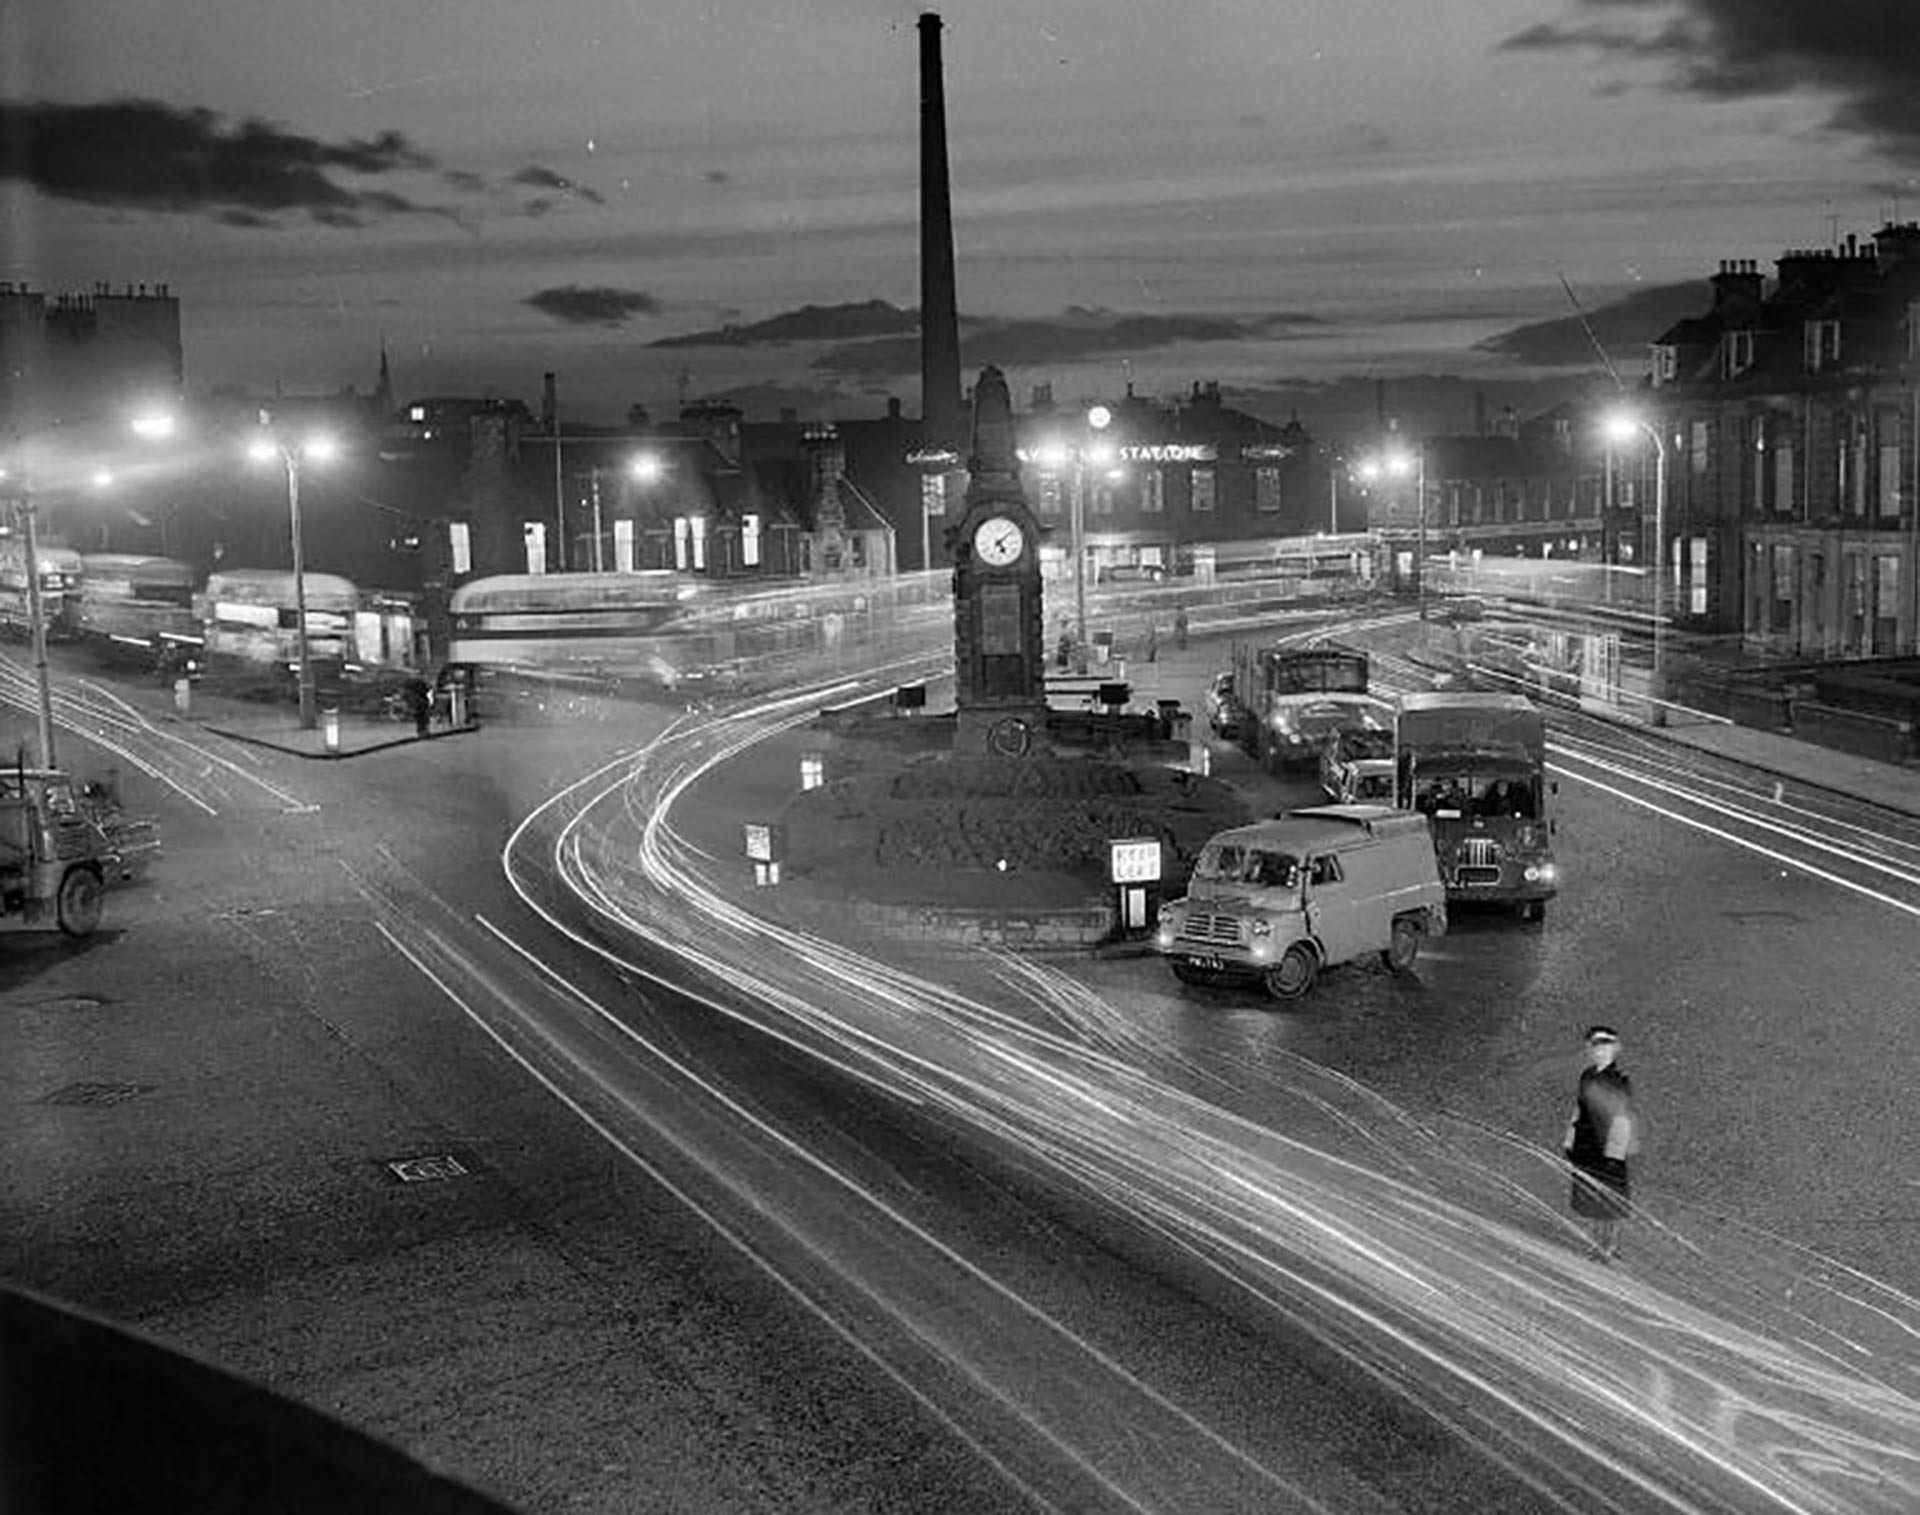 Haymarket junction at night.